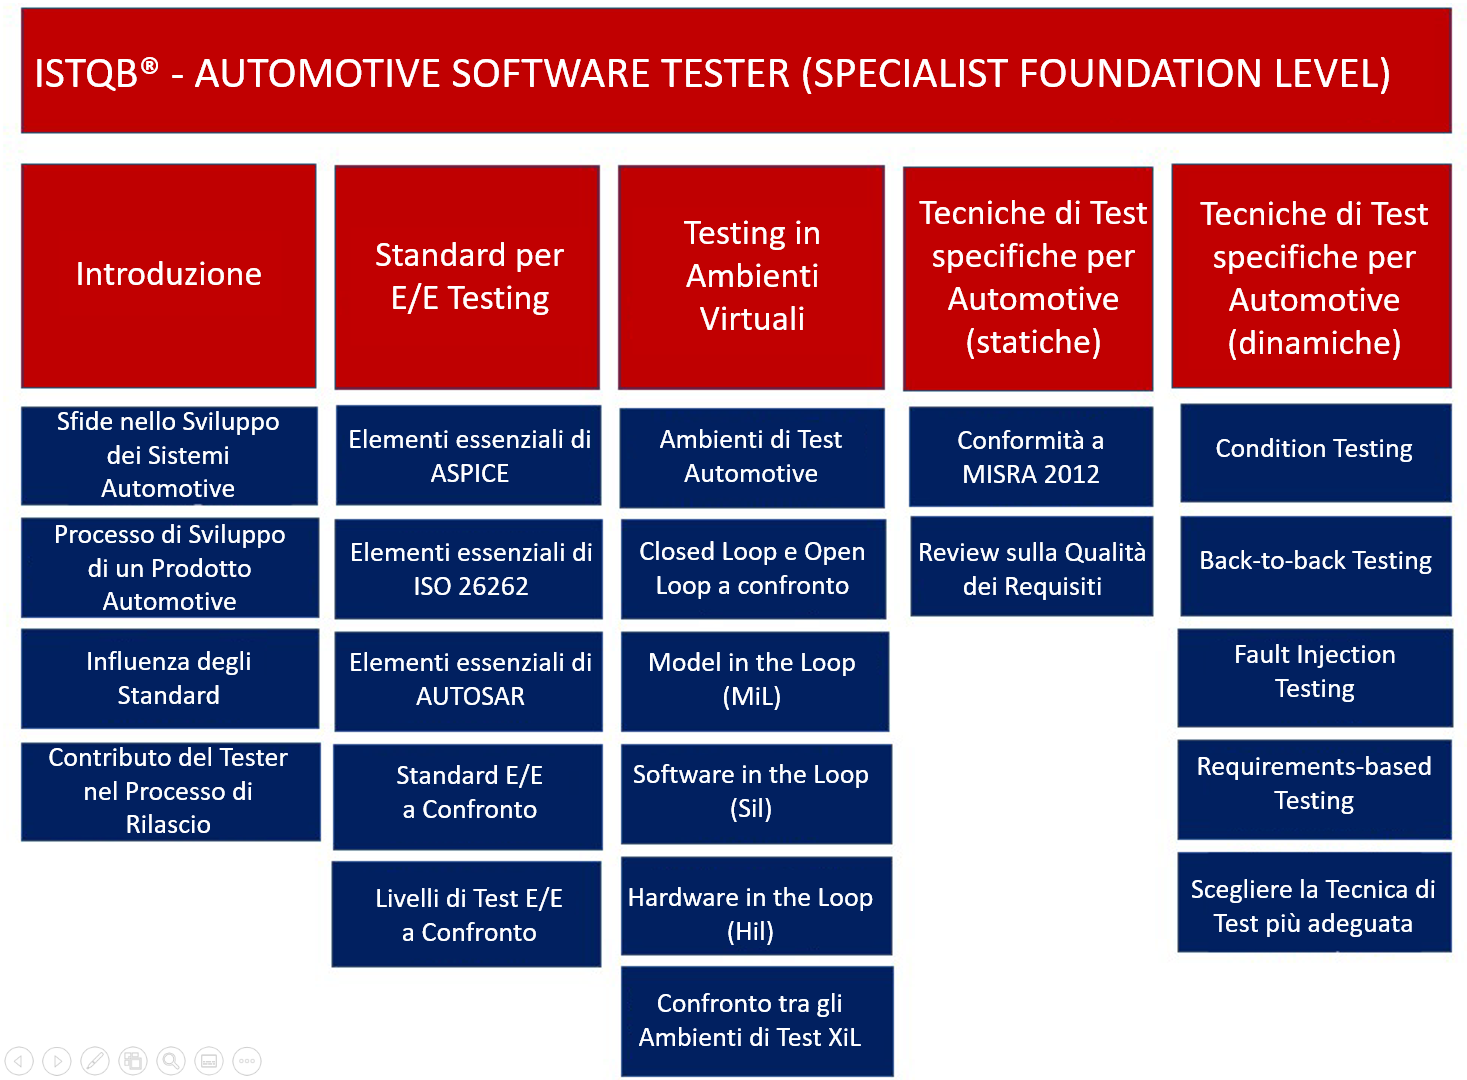 Contenuti della certificazione Specialist Automotive Software Tester